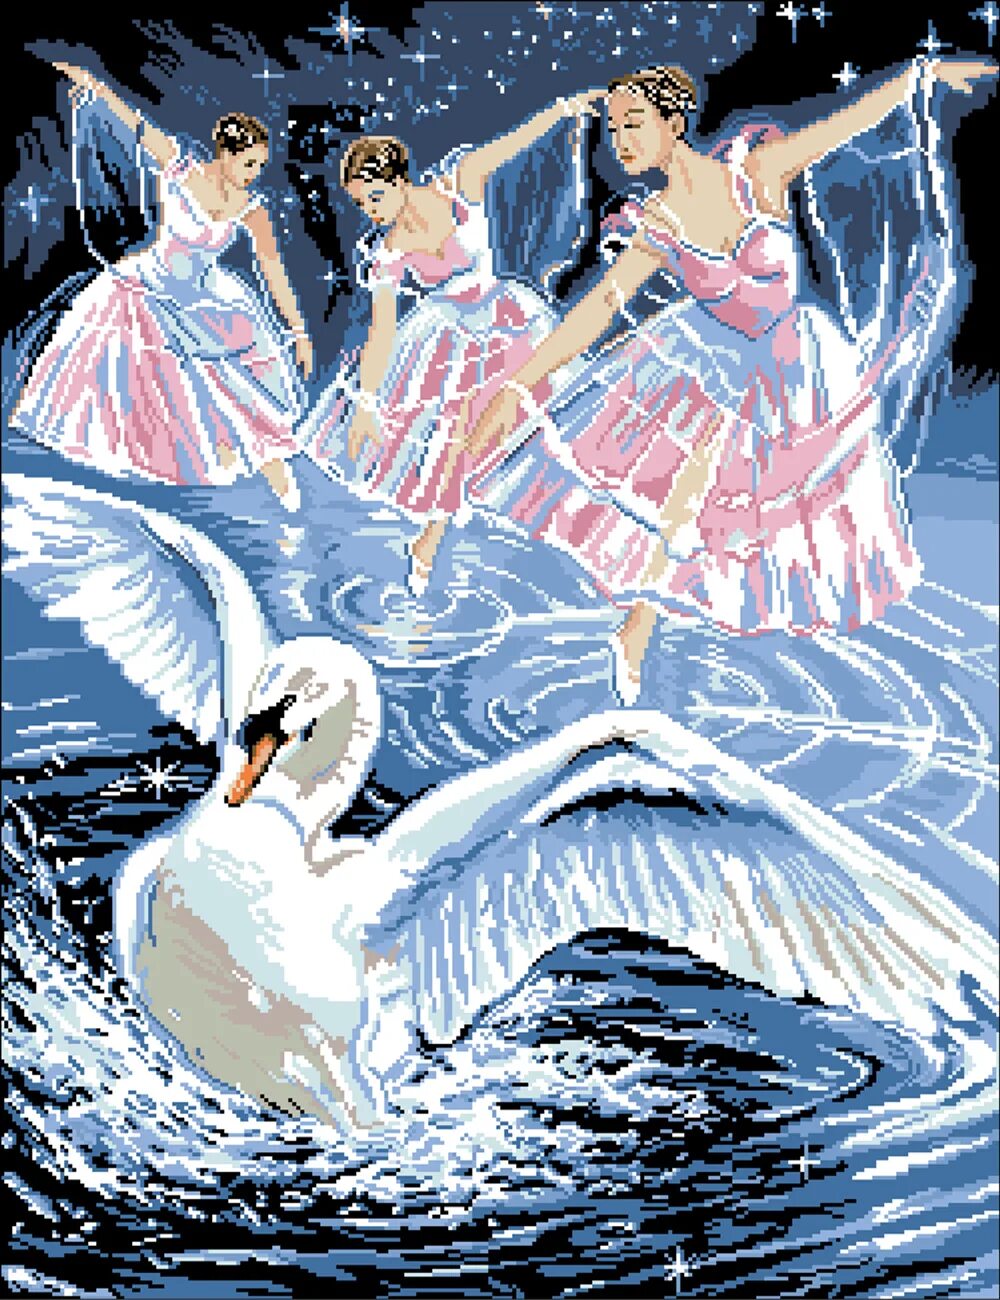 Иллюстрация к балету Чайковского Лебединое озеро. Балет Лебединое озеро. Картина Лебединое озеро Чайковский. Рисунок к балету Чайковского Лебединое озеро. Пусть танцуют лебеди